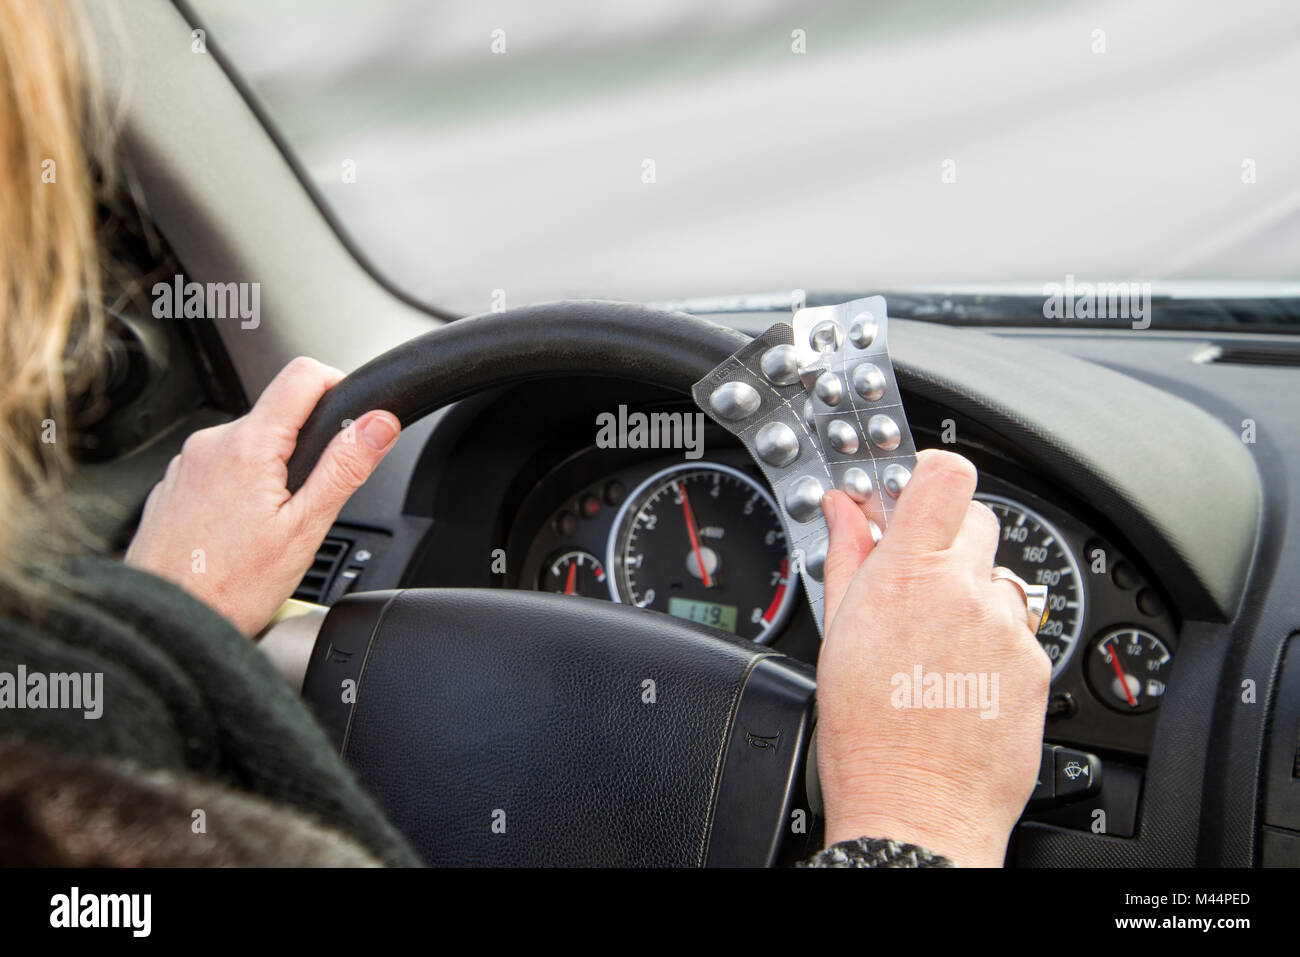 Hände mit Packs von Tabletten am Lenkrad eines Autos während der Fahrt Stockfoto